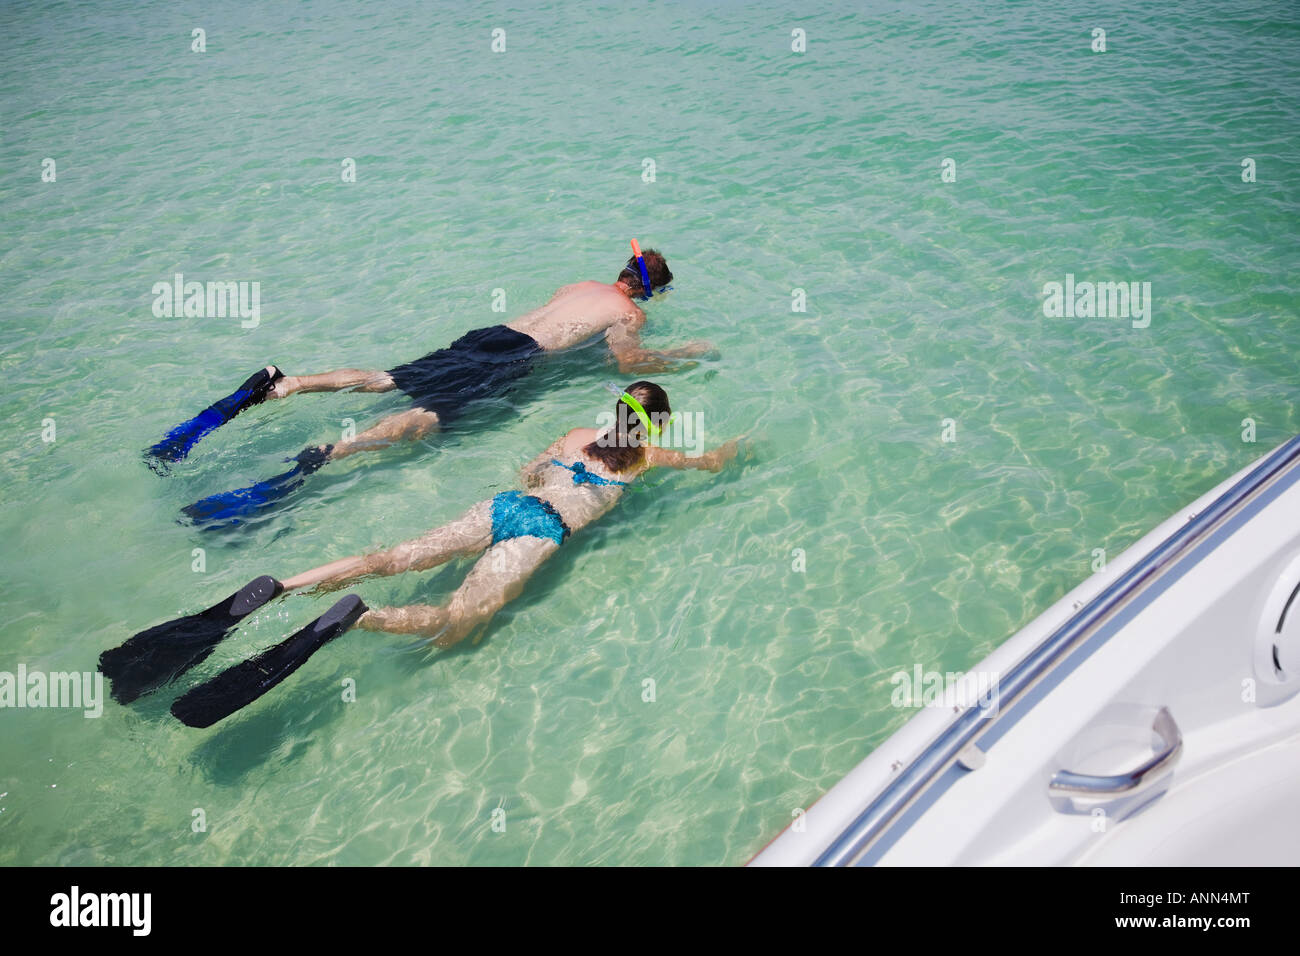 Vater und Tochter Schnorcheln in Wasser, Florida, Vereinigte Staaten Stockfoto